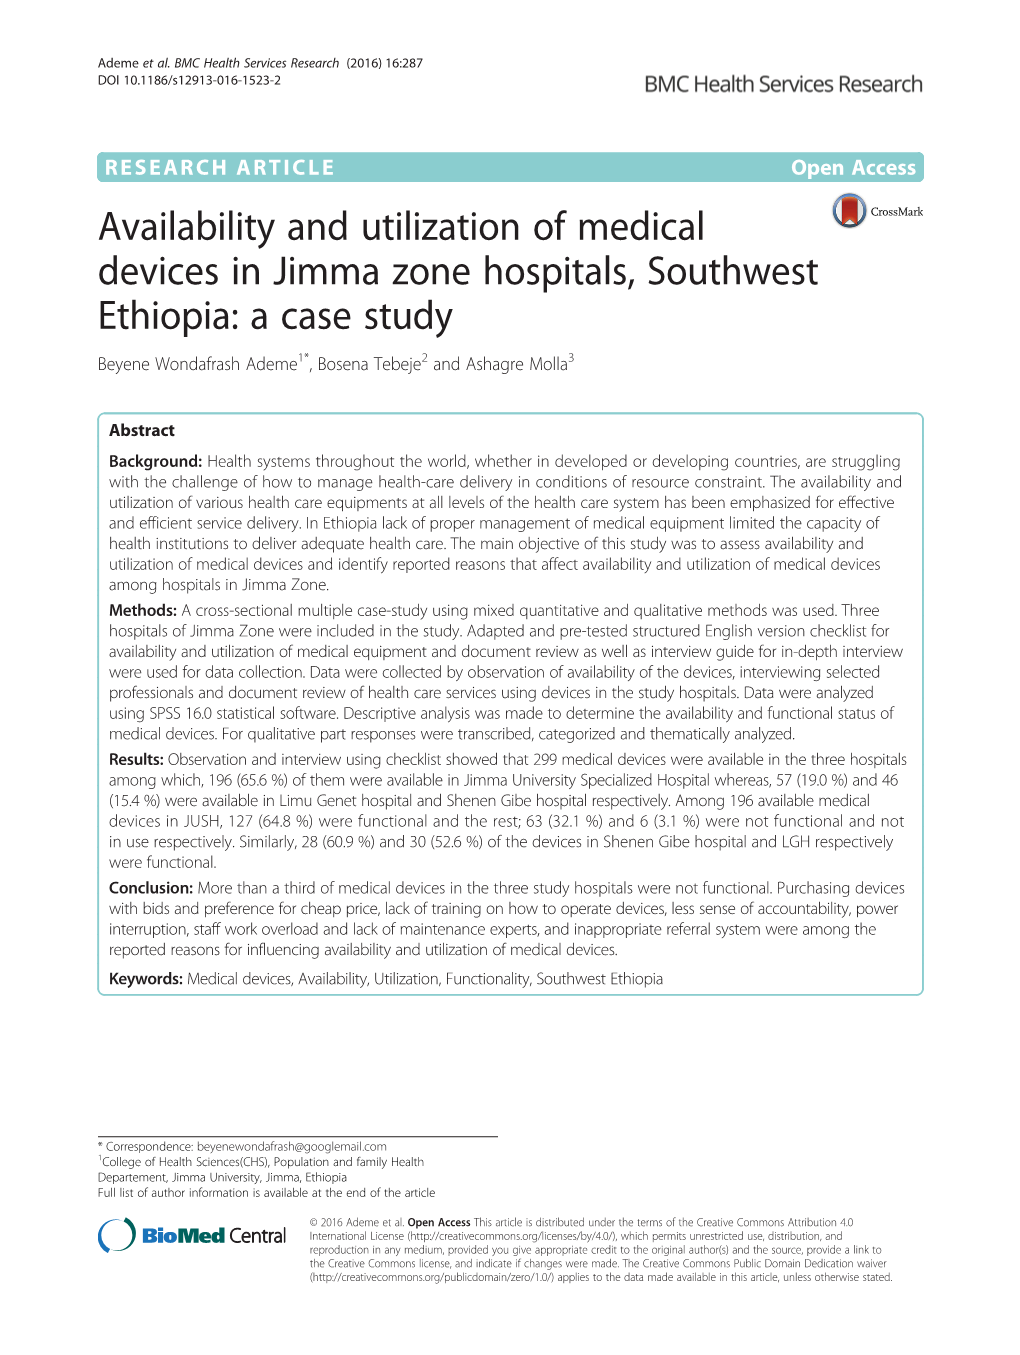 Availability and Utilization of Medical Devices in Jimma Zone Hospitals, Southwest Ethiopia: a Case Study Beyene Wondafrash Ademe1*, Bosena Tebeje2 and Ashagre Molla3